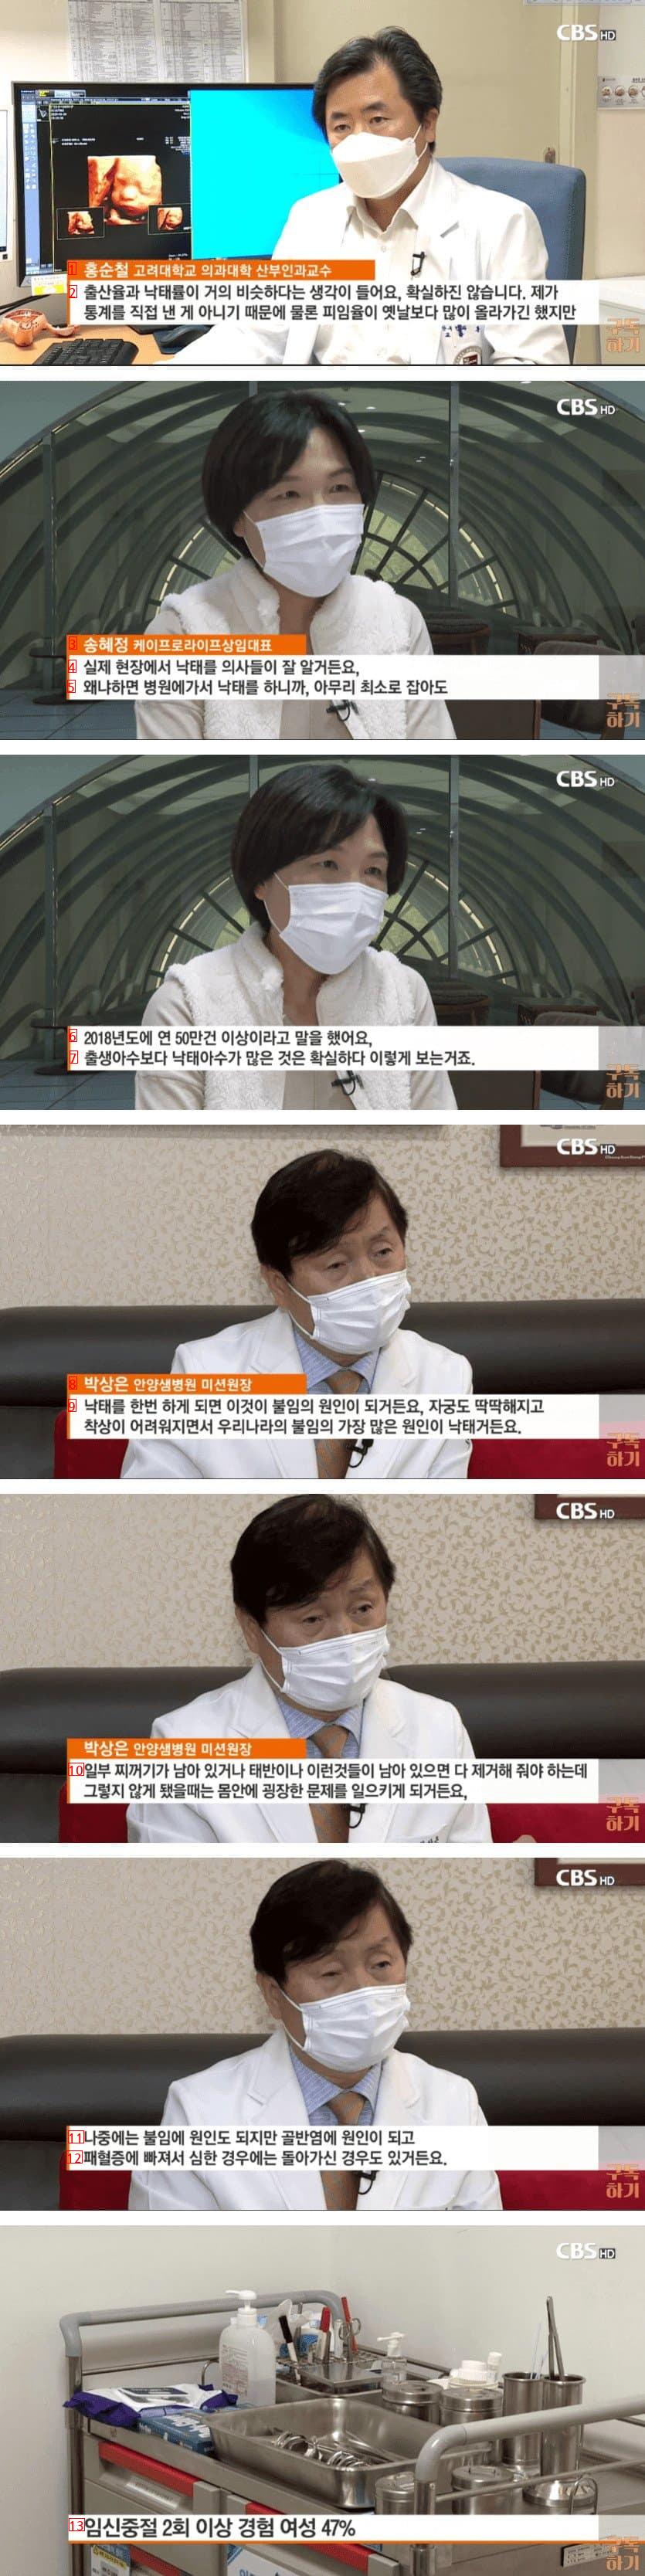 한국의 낙태아 수 근황. jpg